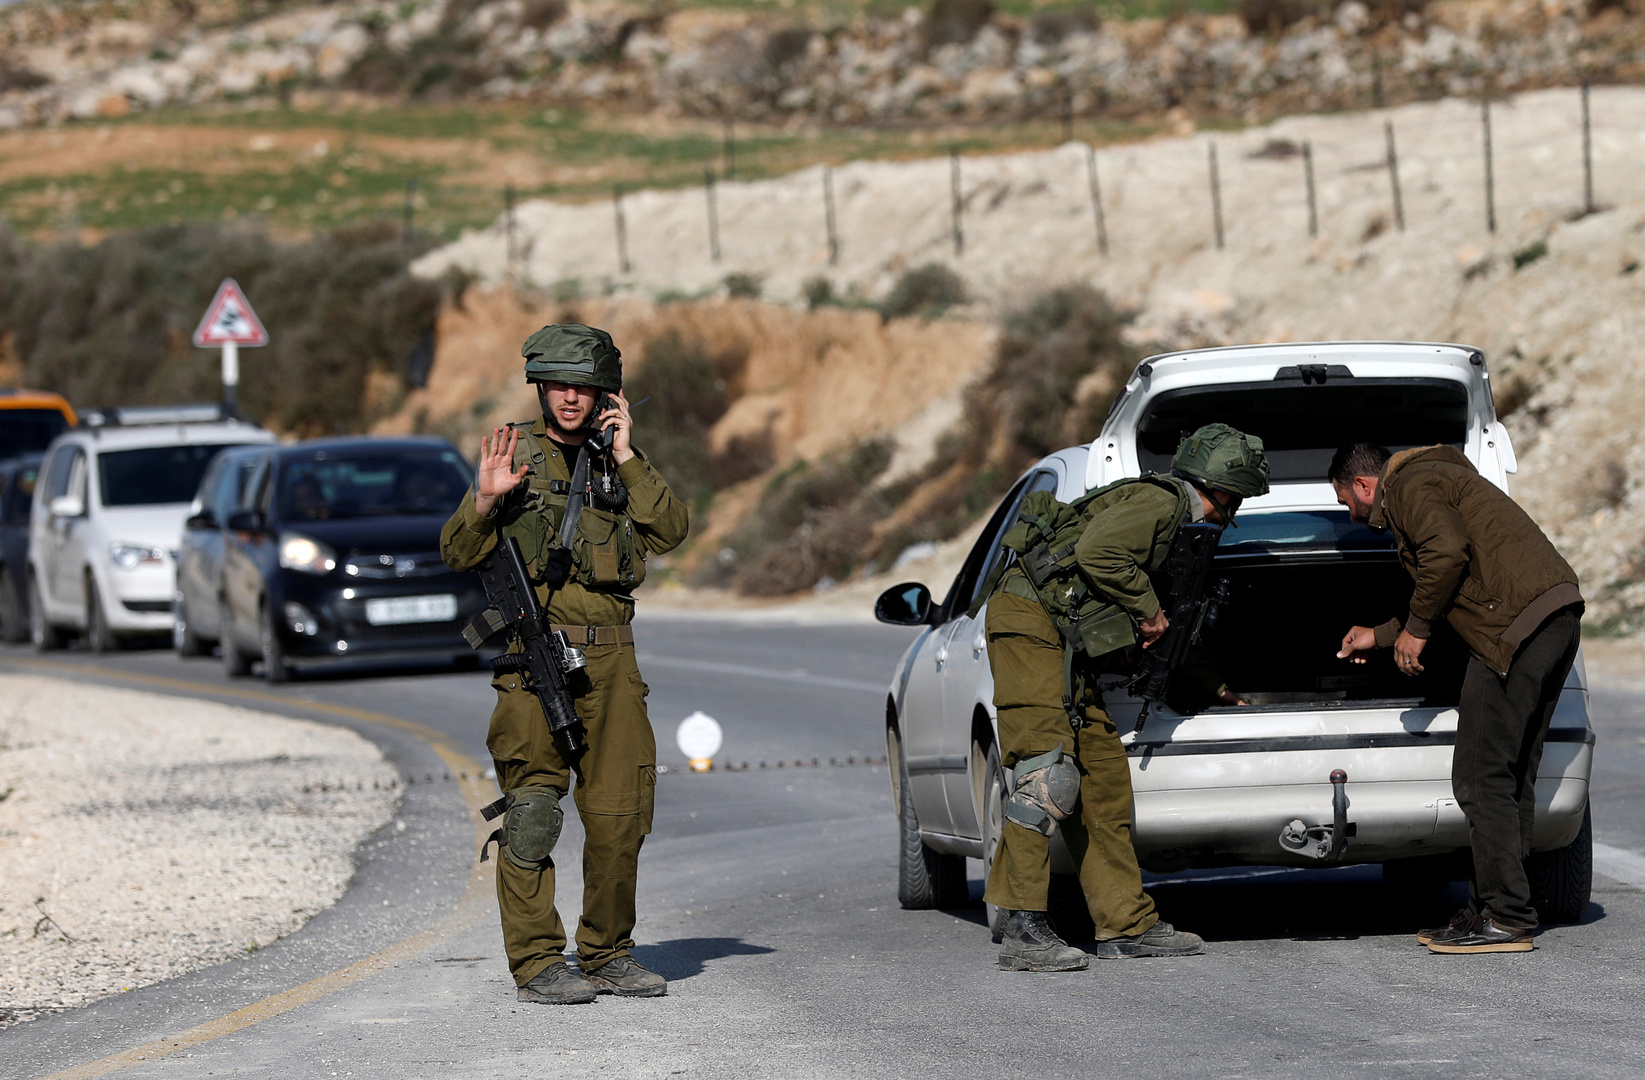 الجيش الإسرائيلي يطلق النار على فلسطيني بزعم طعنه أحد الجنود